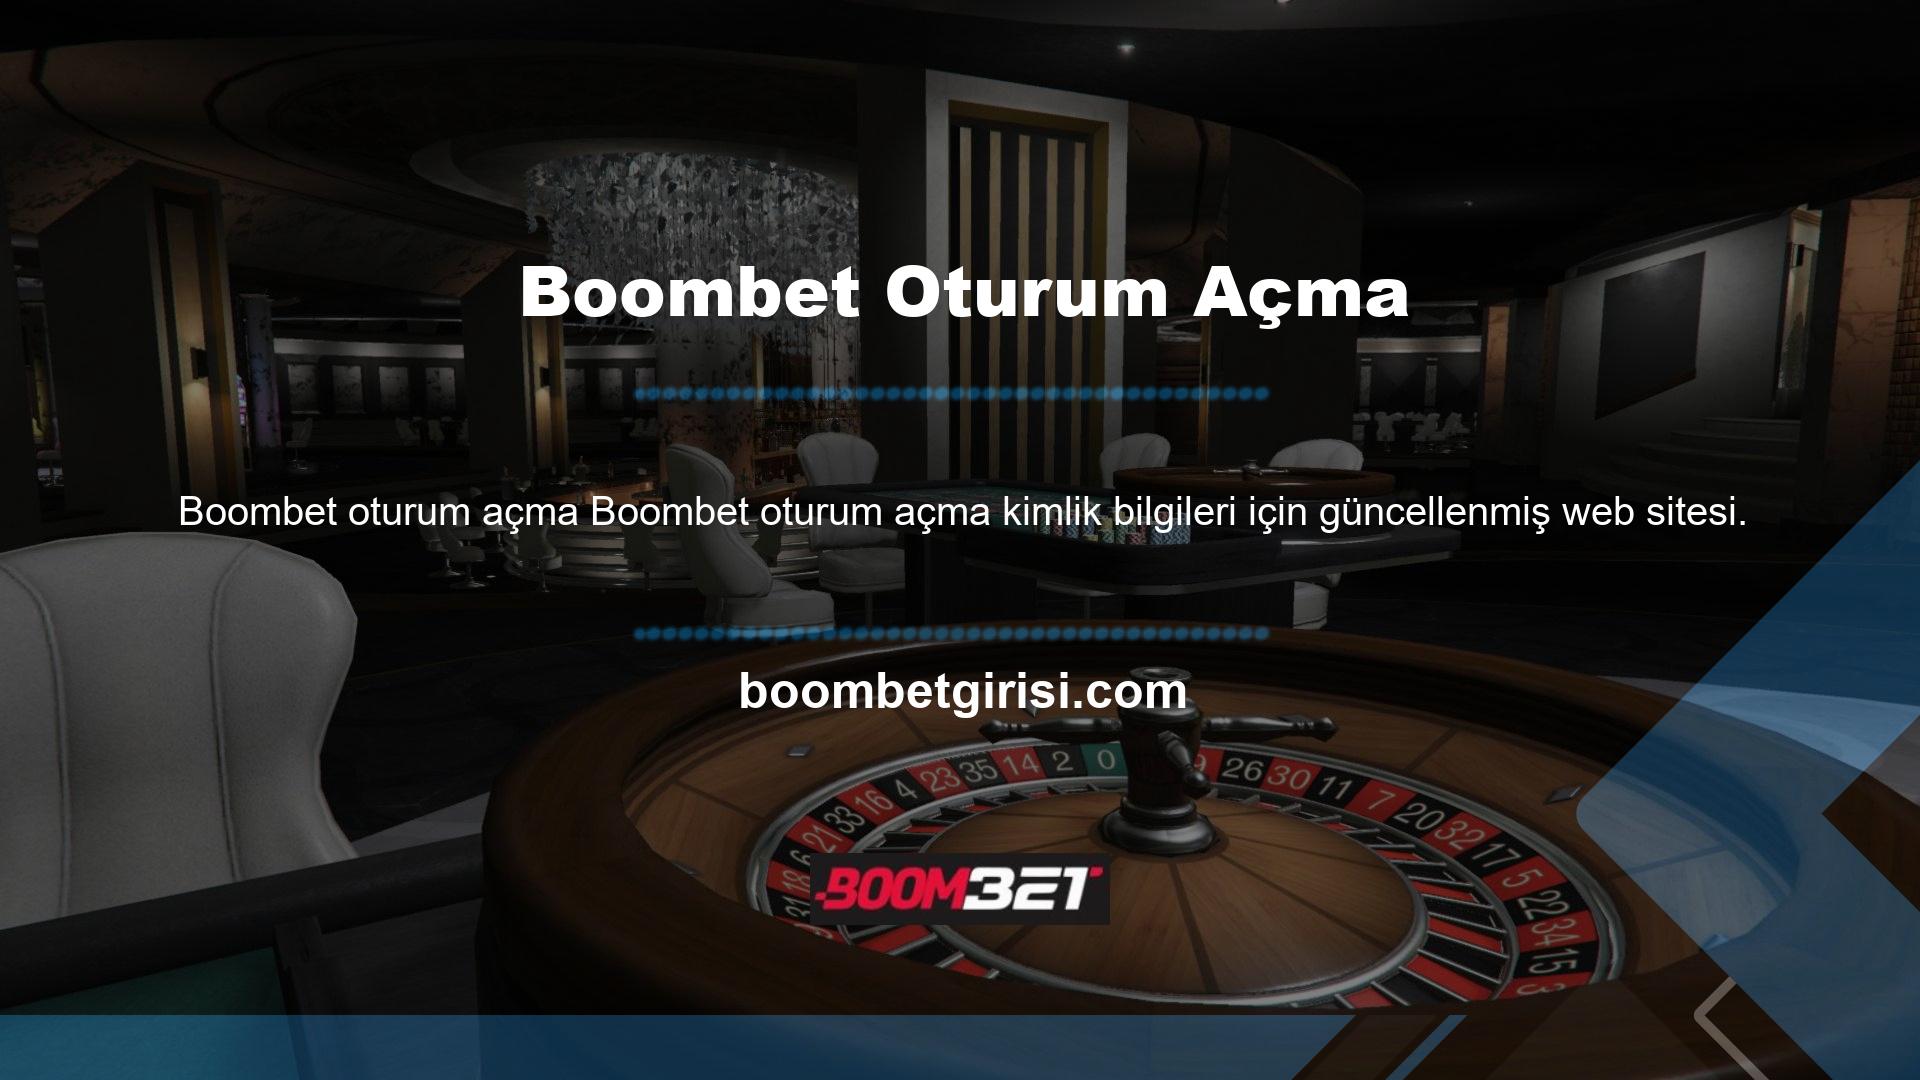 Güncelleme, üyelerin daha güvenilir olduğu düşünülen Boombet Mobile giriş adresini talep etmelerine yol açtı